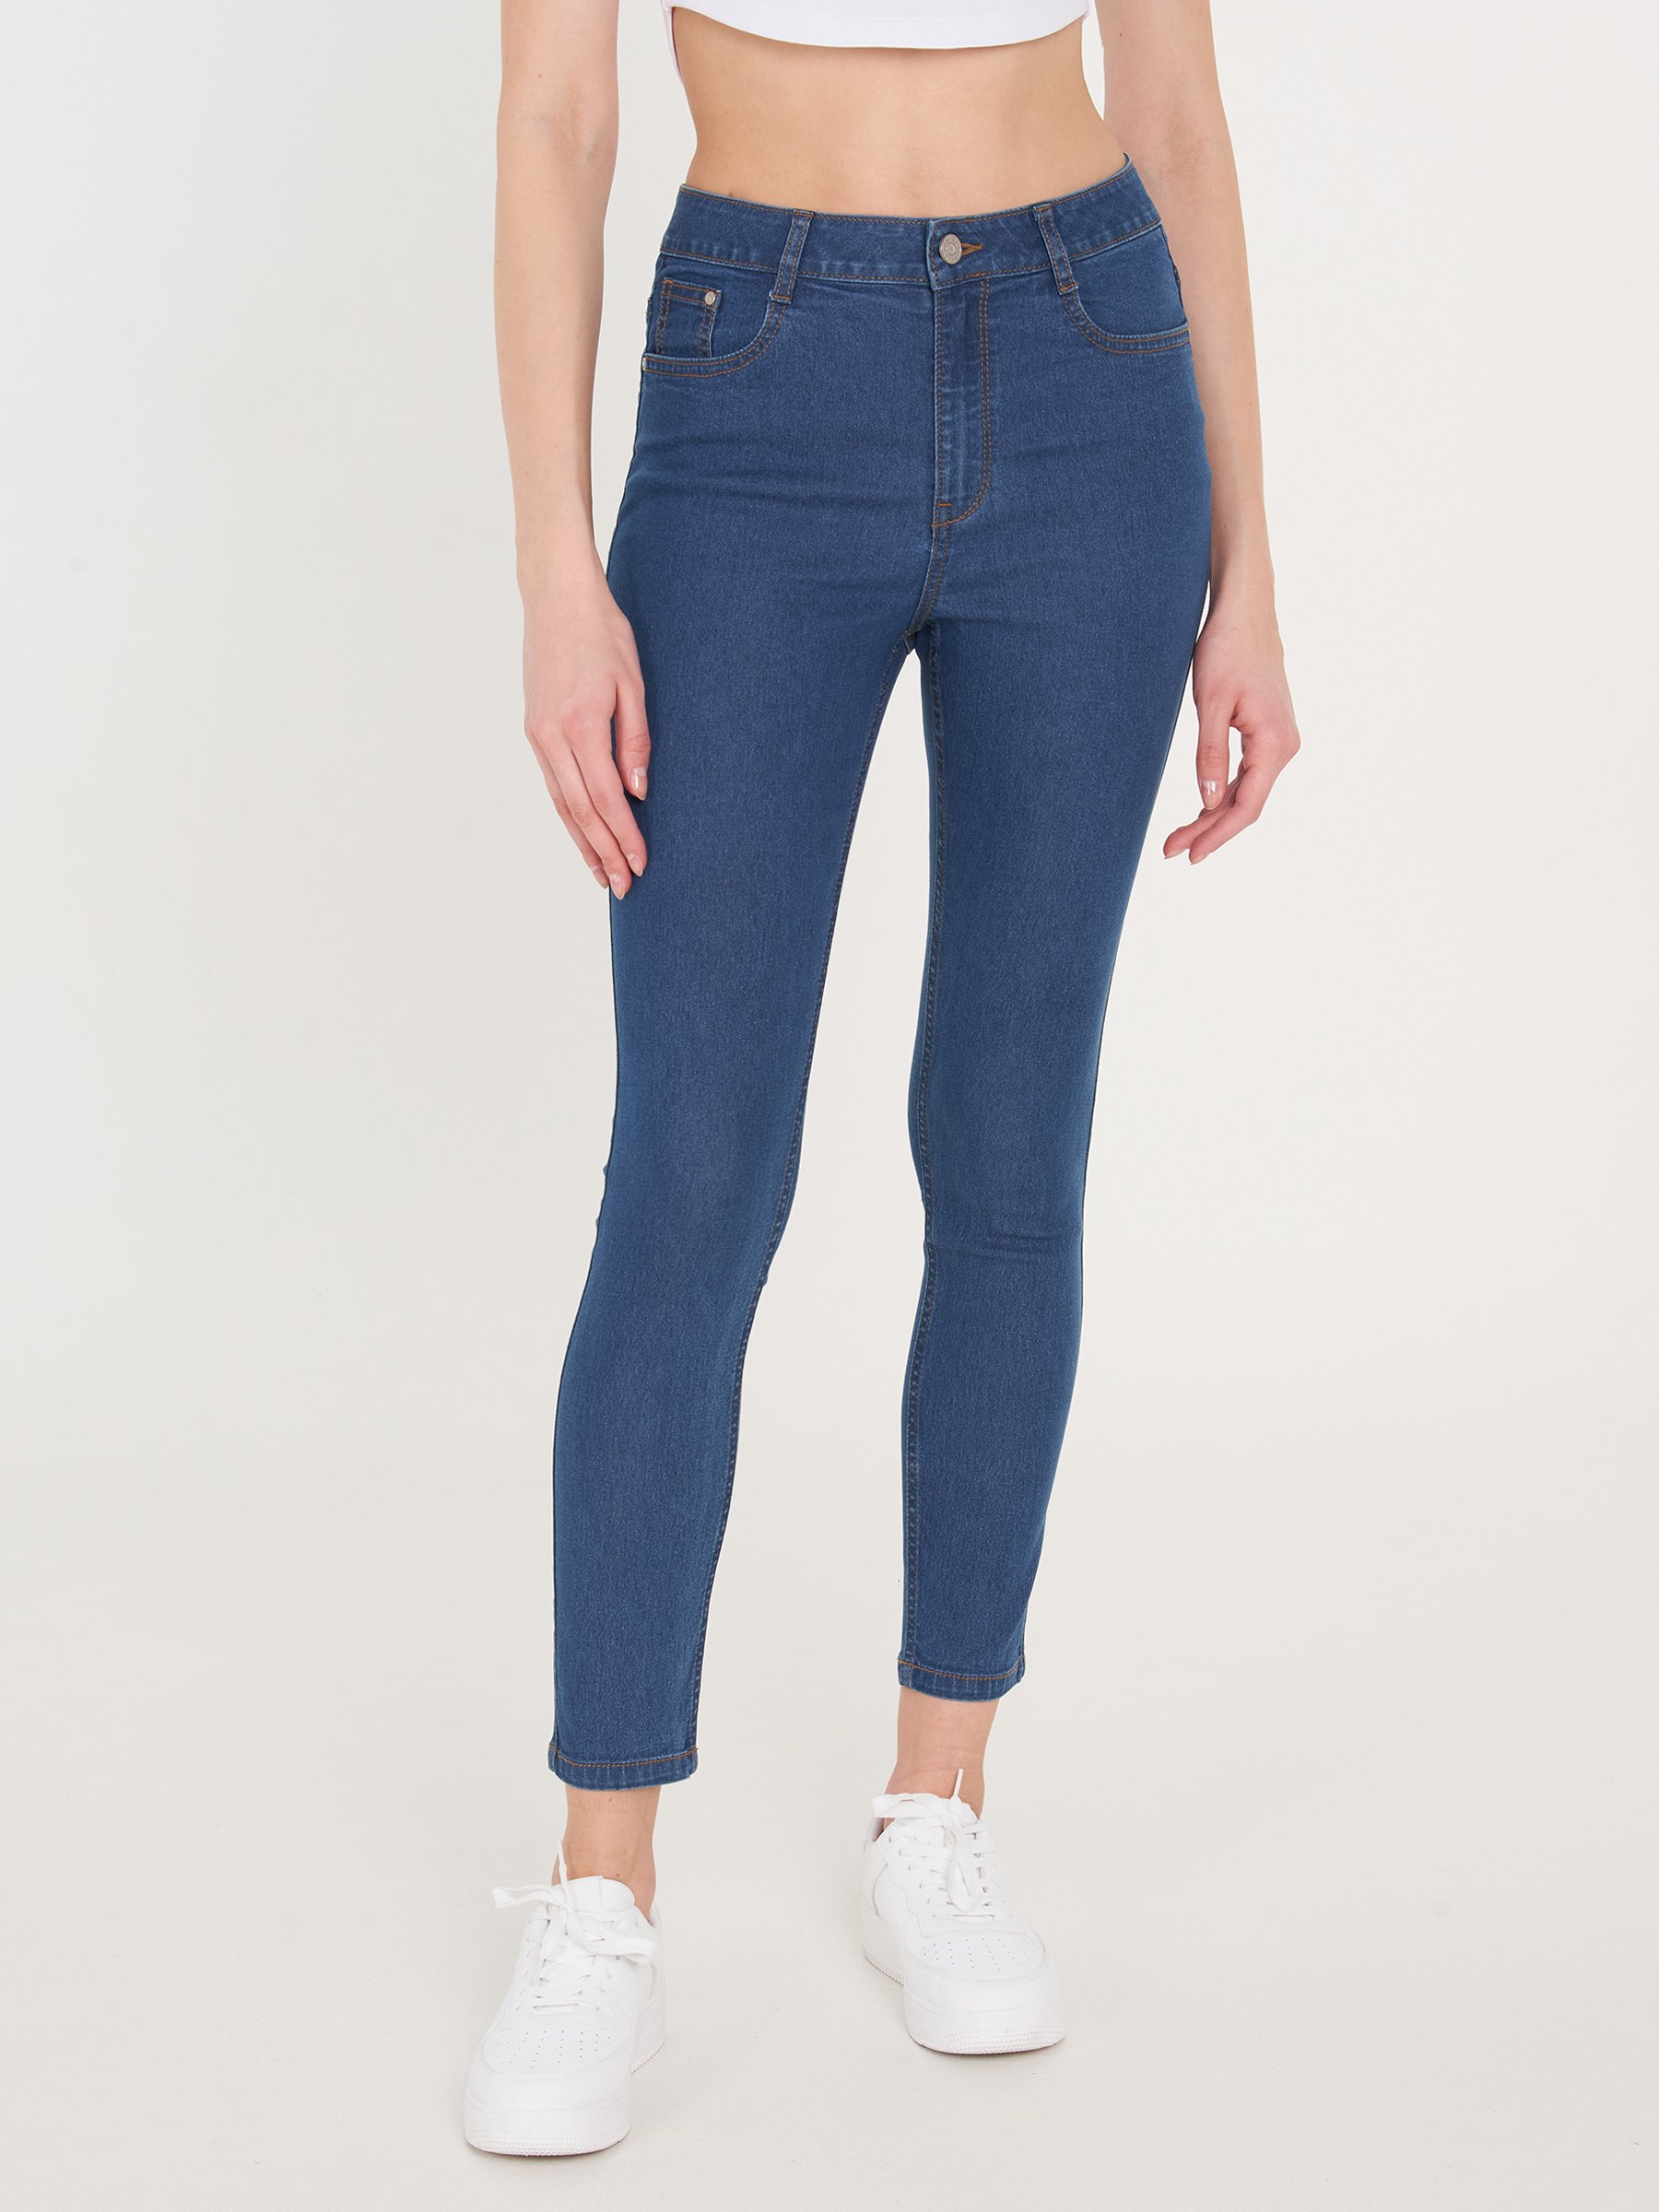 Blue 36                  EU discount 99% WOMEN FASHION Jeans Boyfriend jeans Worn-in Bershka boyfriend jeans 